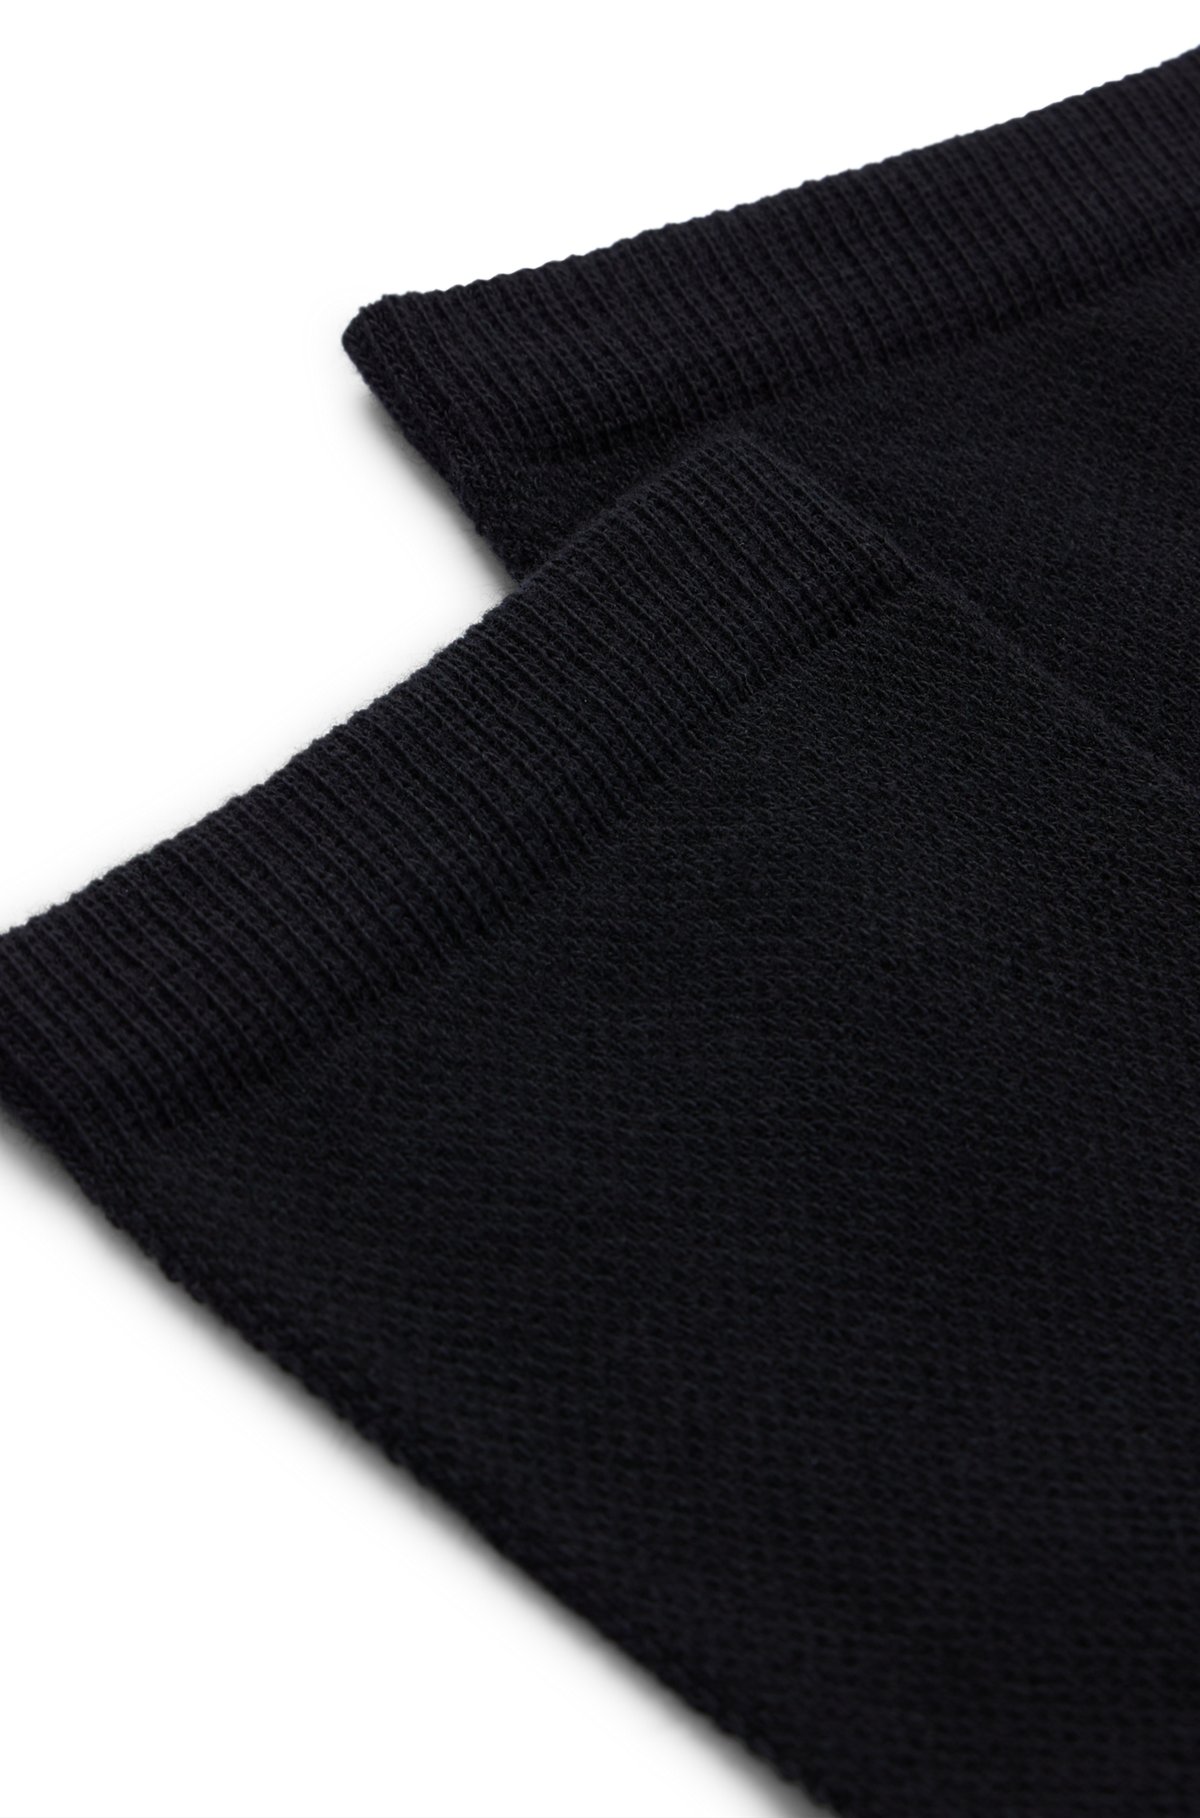 Lot de deux paires de chaussettes courtes en coton mélangé piqué, Noir